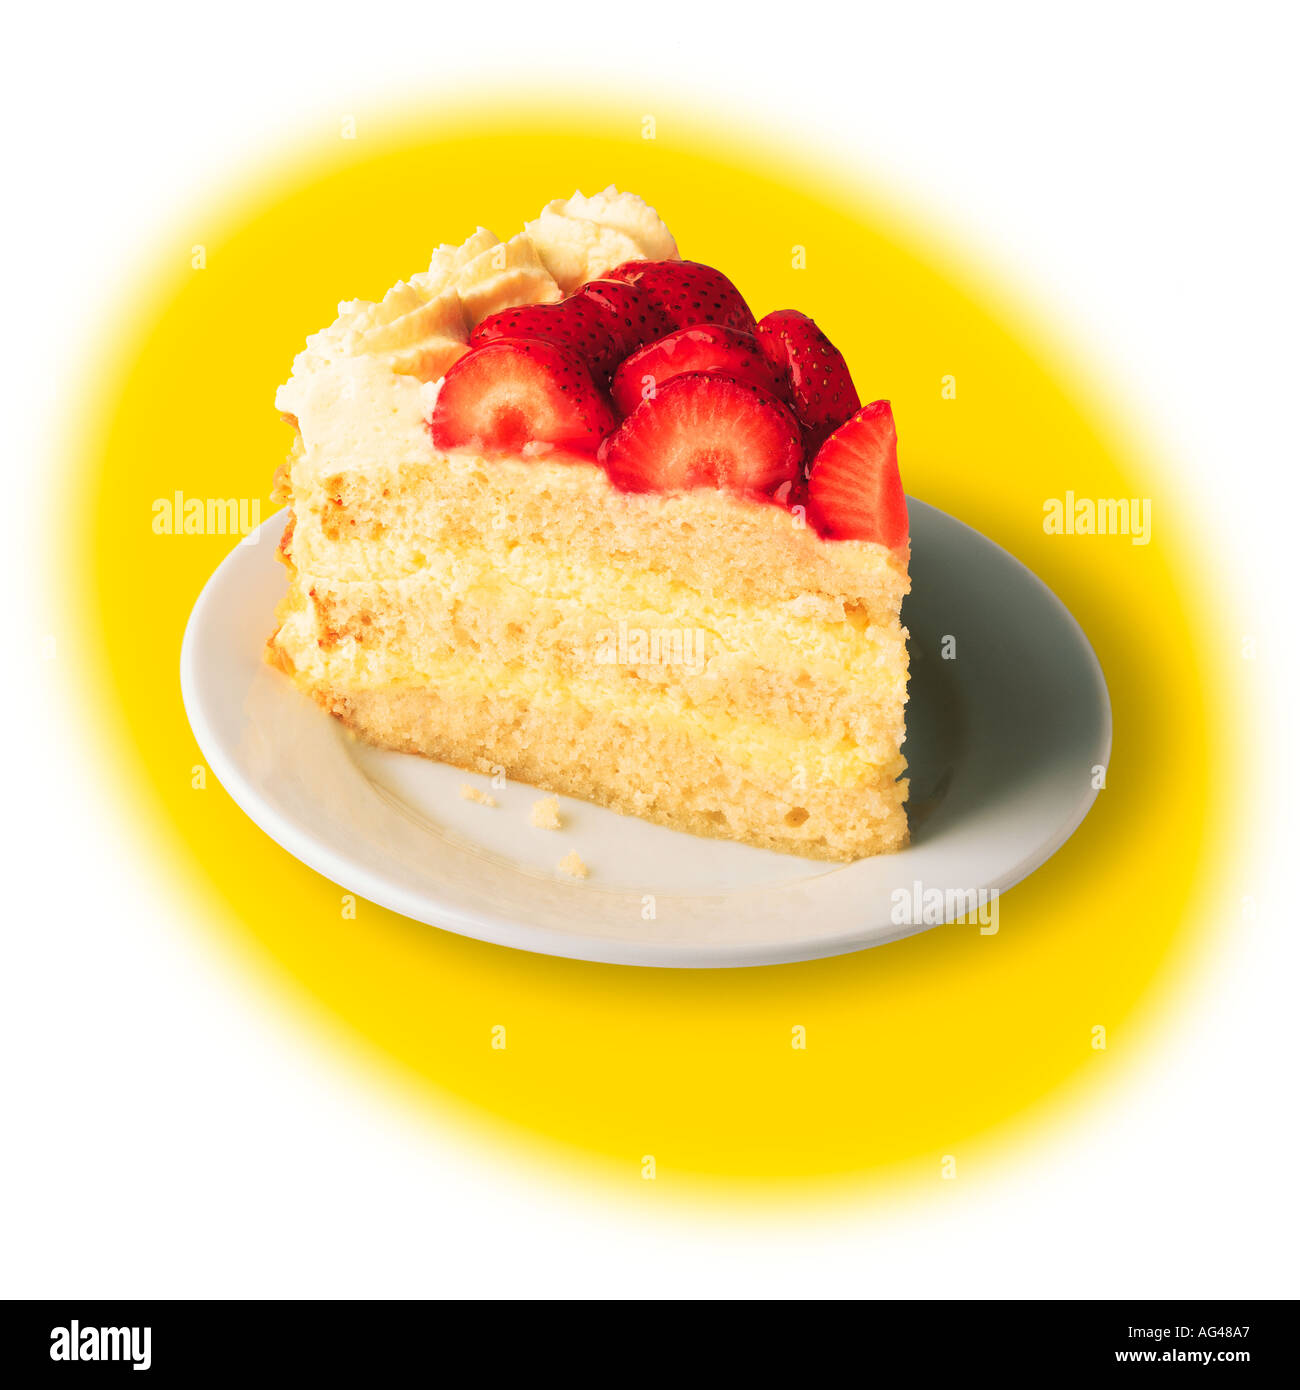 Morceau de gâteau. Gâteau aux fraises sur une plaque. Isolé sur un fond graphique jaune et blanc. Banque D'Images